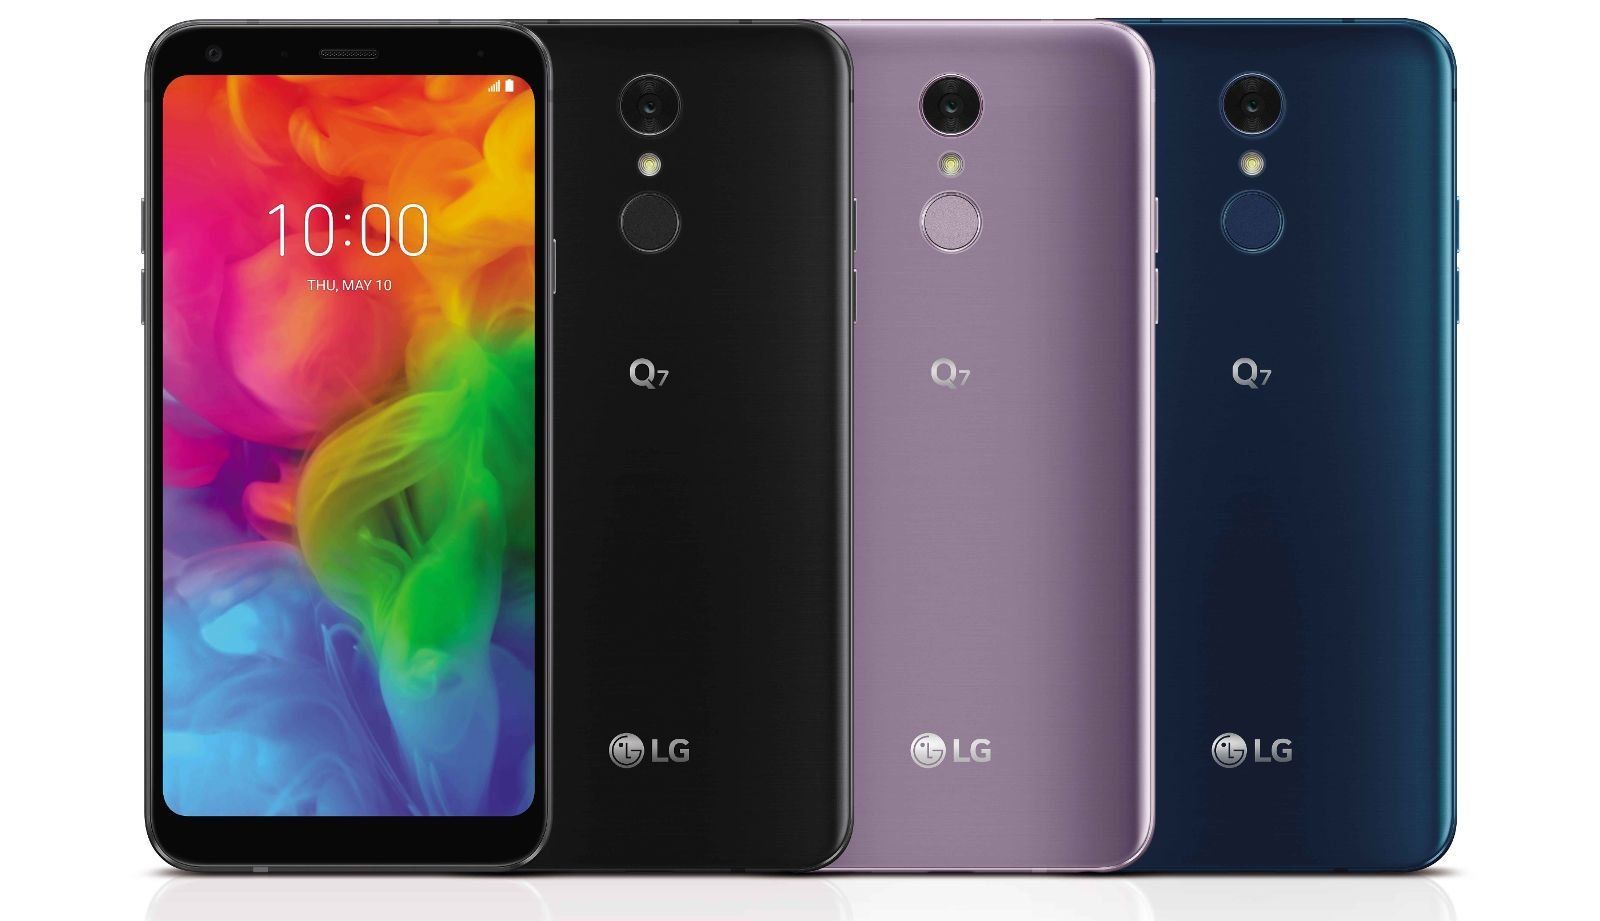 Fordele og ulemper ved LG Q7 + og Q7 smartphones - nye produkter i 2018